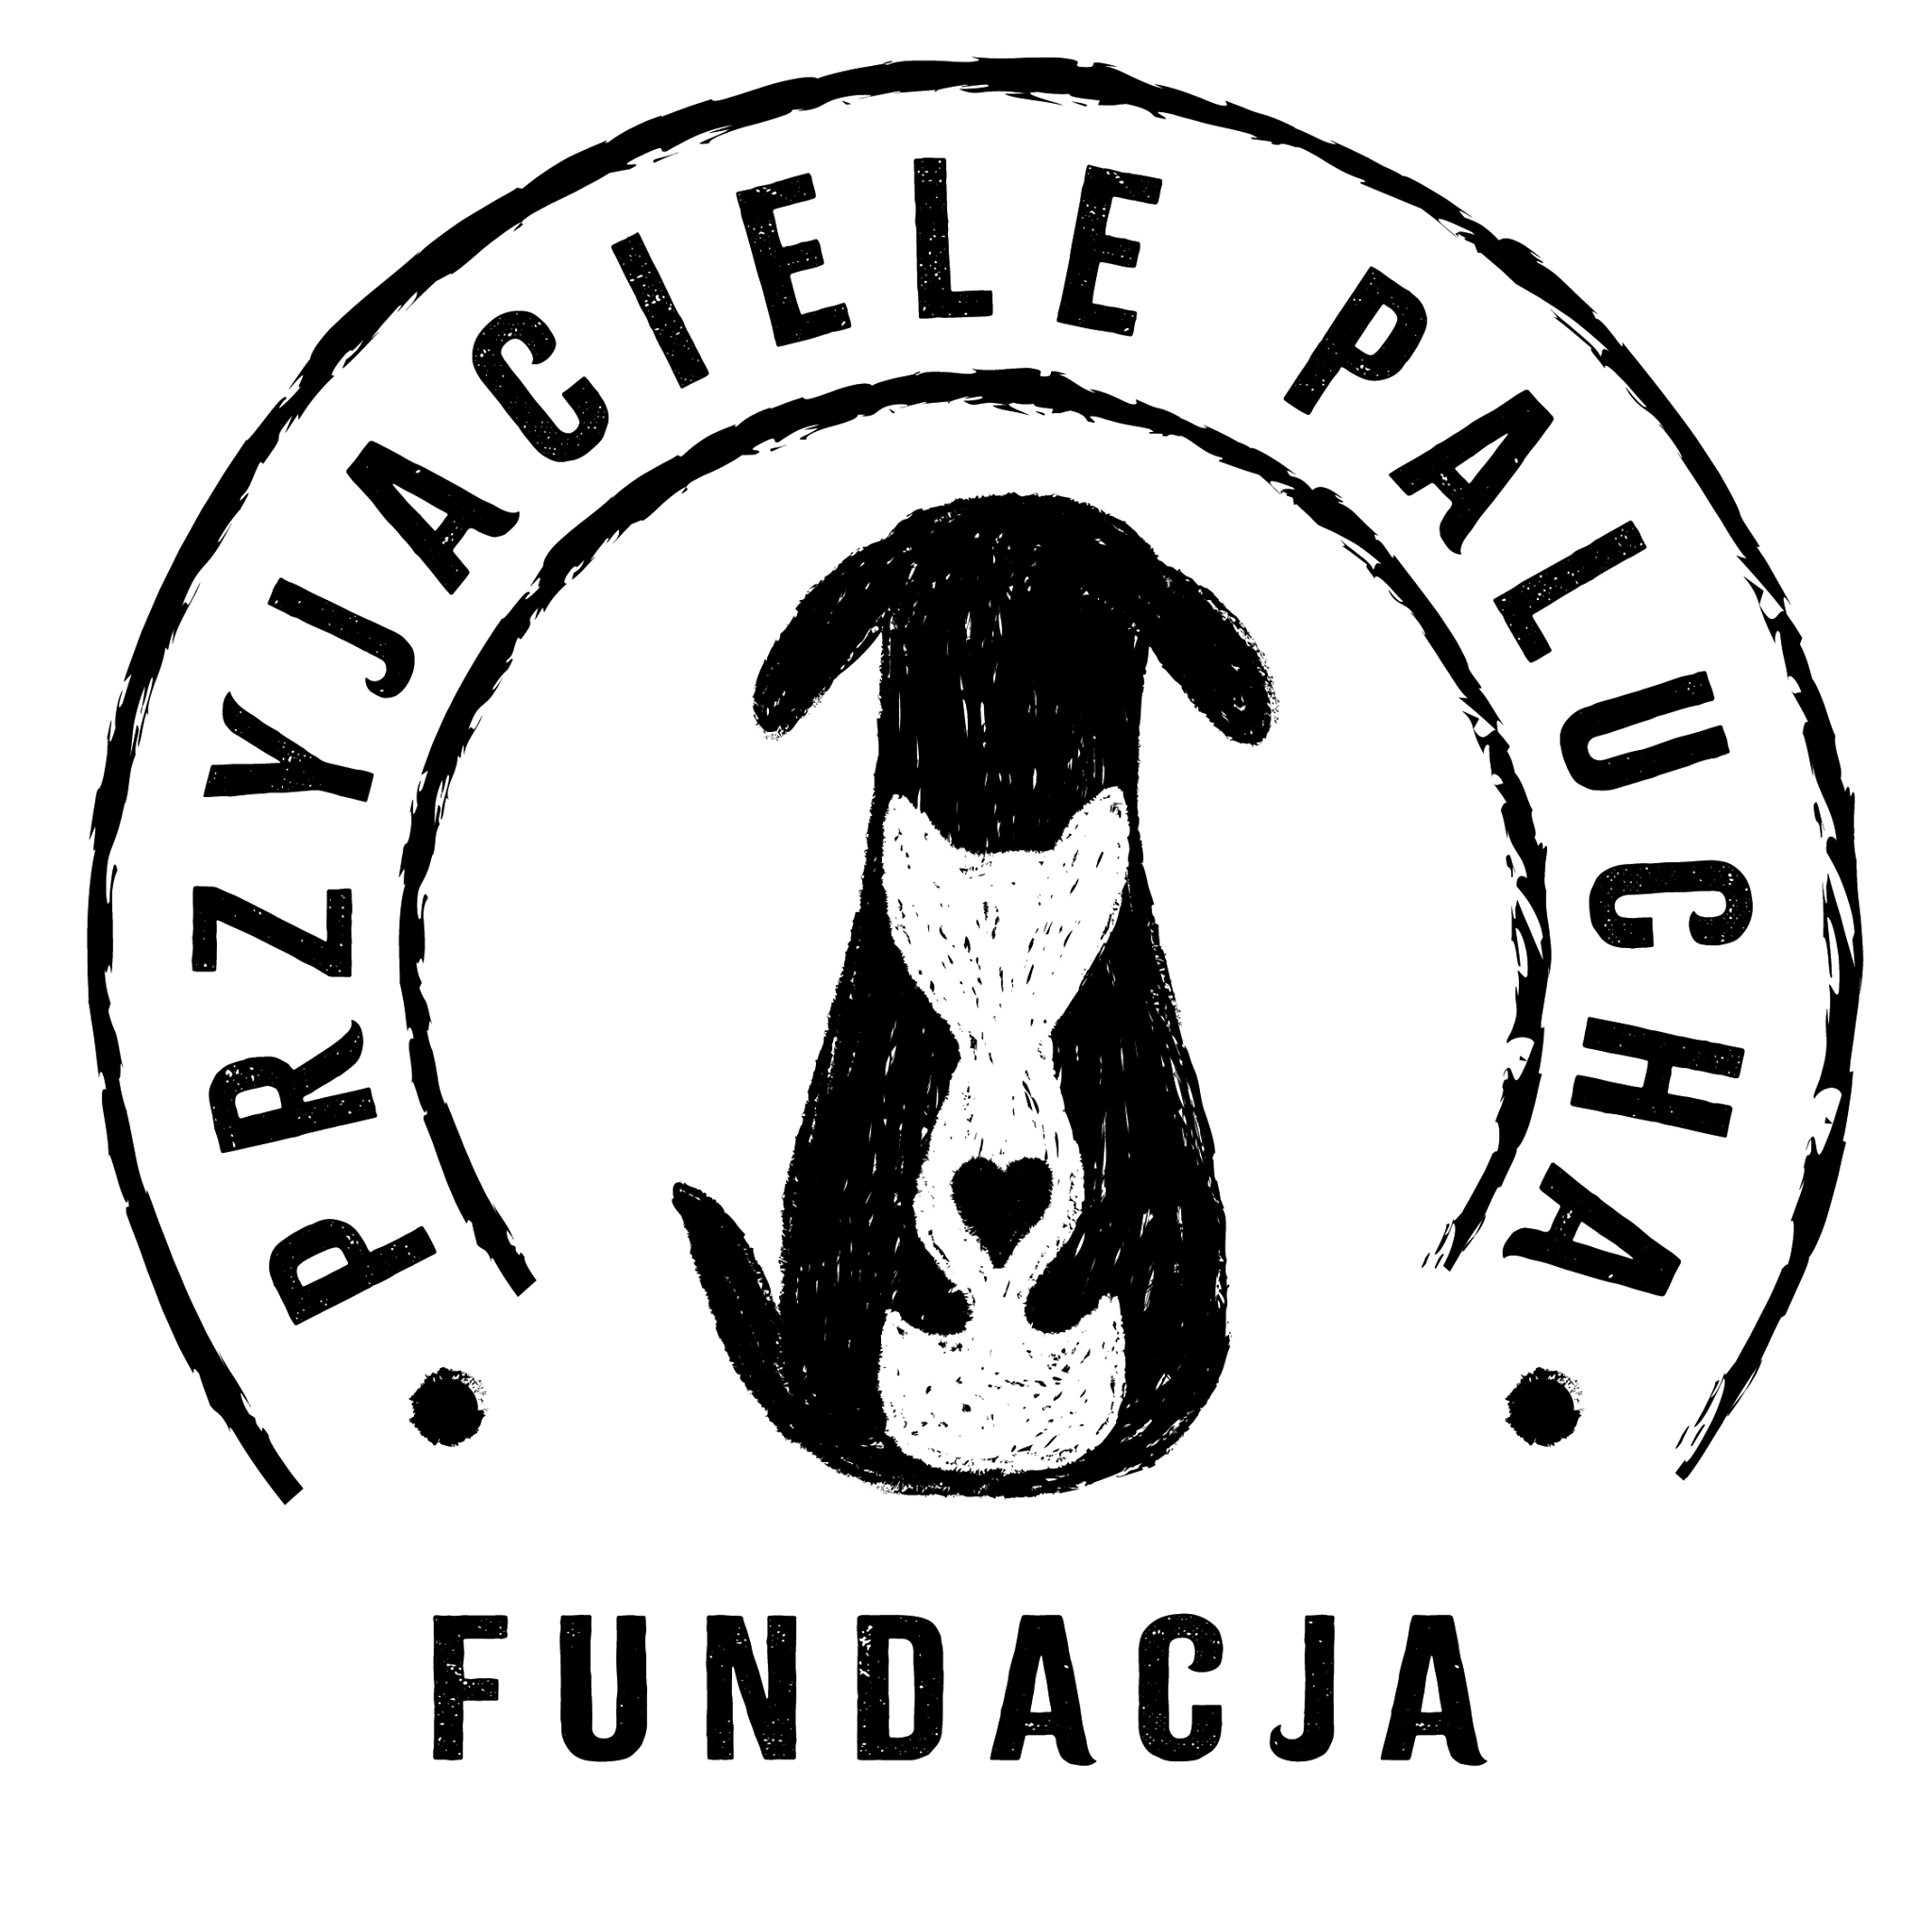 Fundacja Przyjaciele Palucha